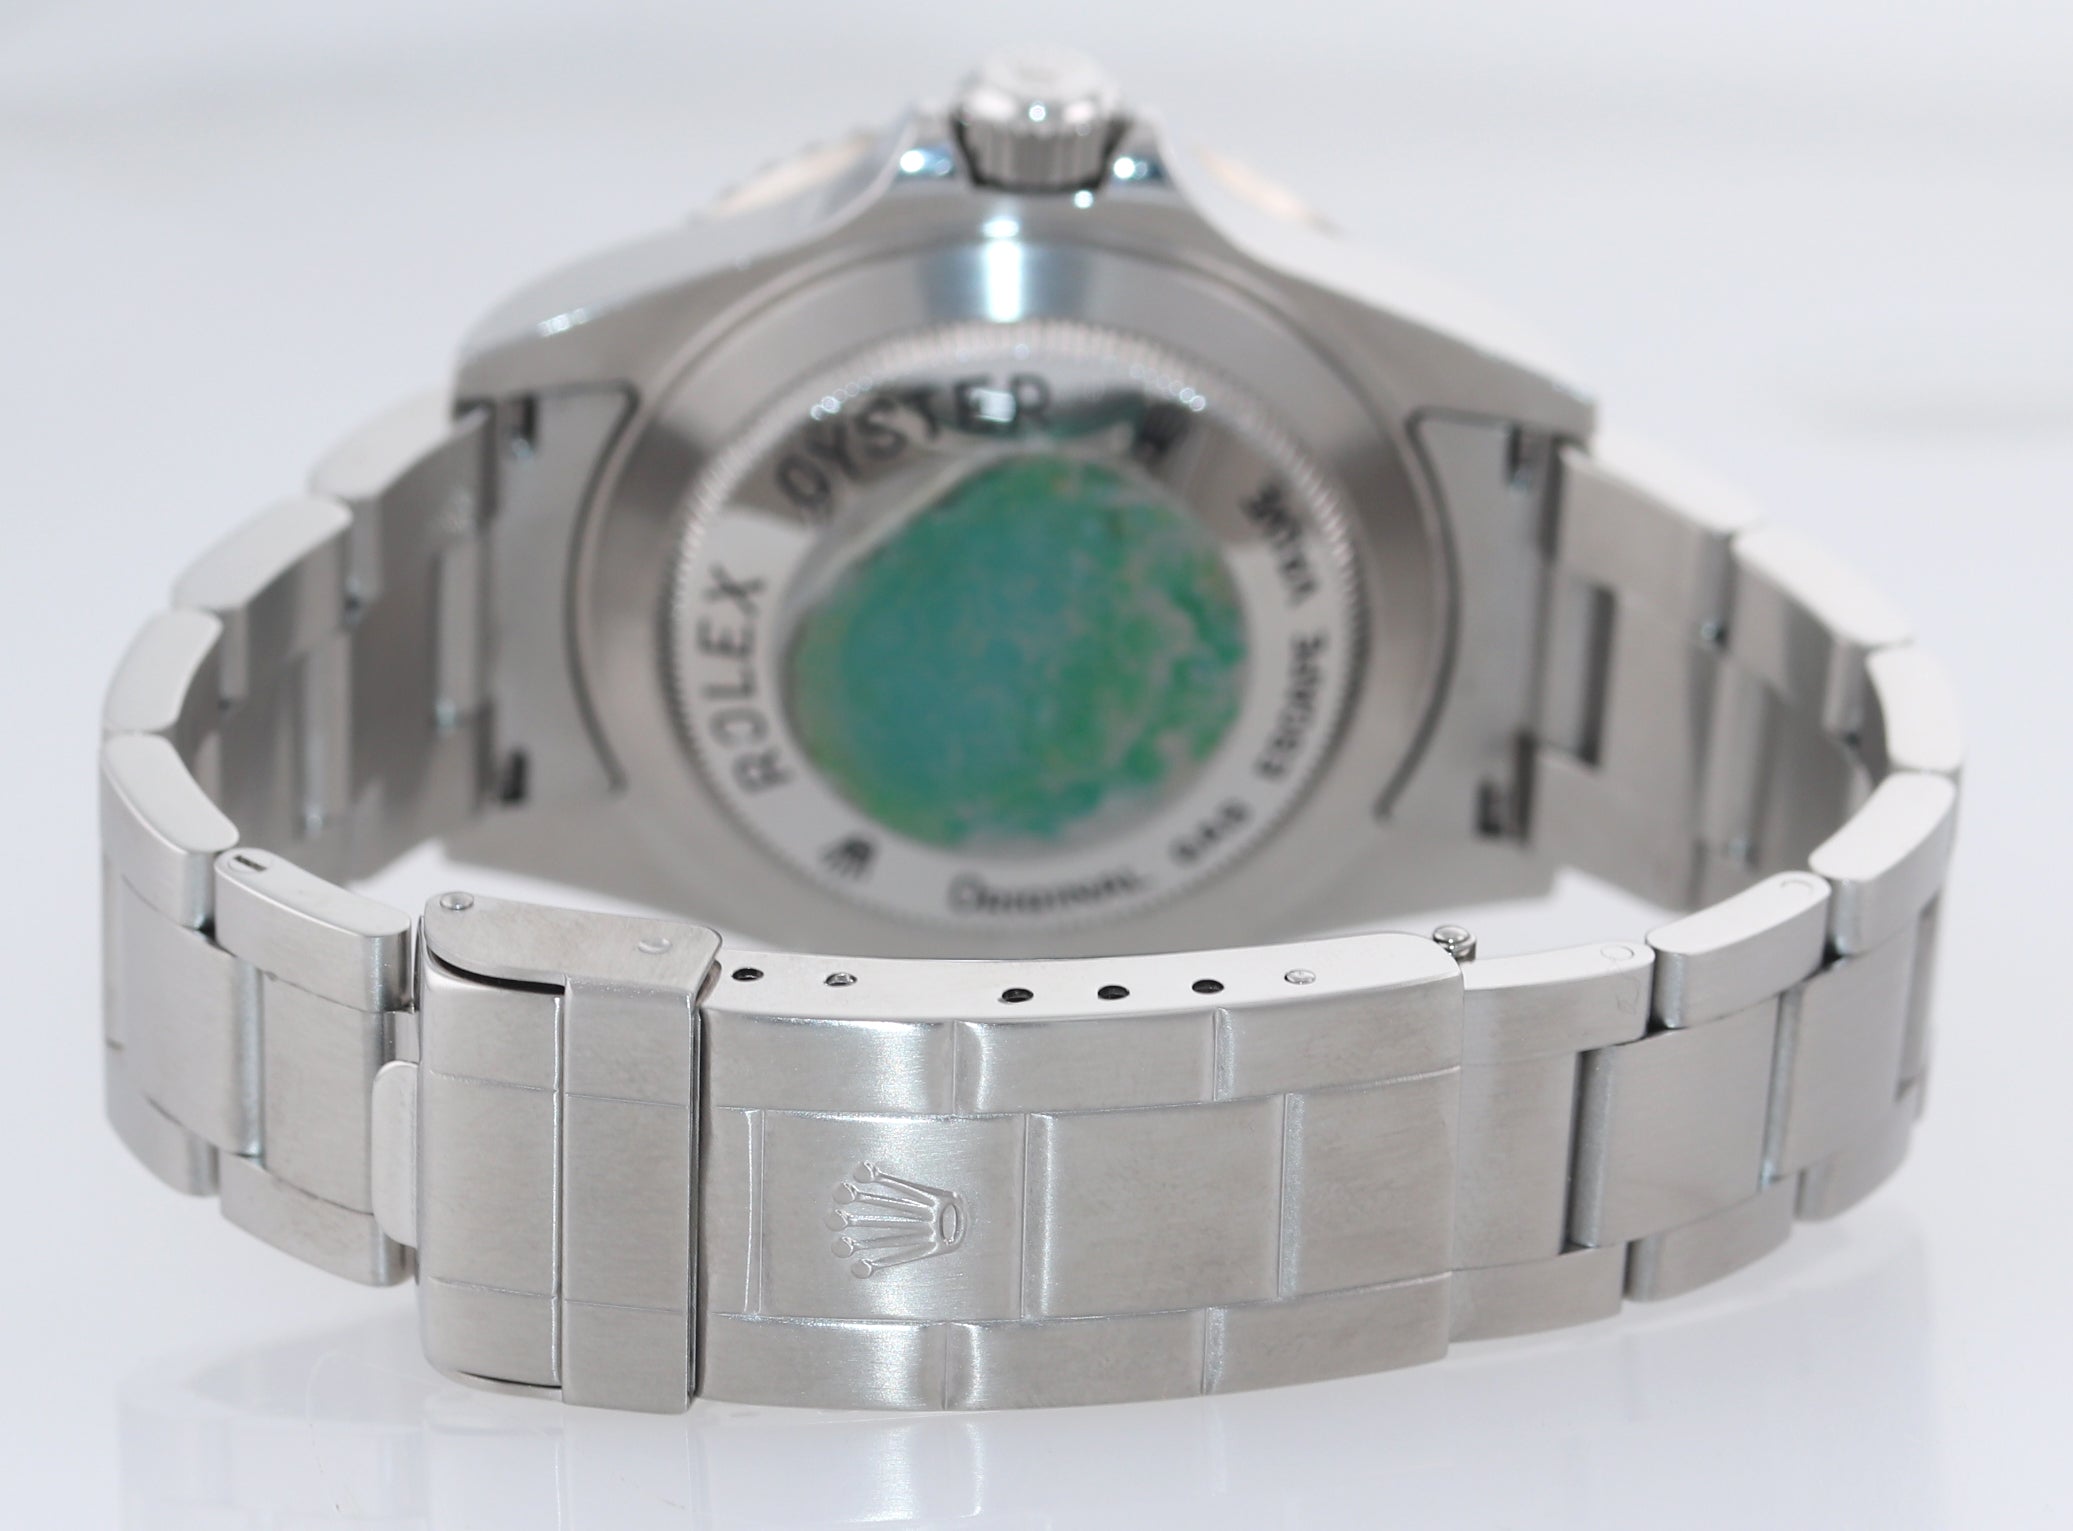 UNPOLISHED MINT Rolex Sea-Dweller Steel 16600 Black Dial Date 40mm Watch Box